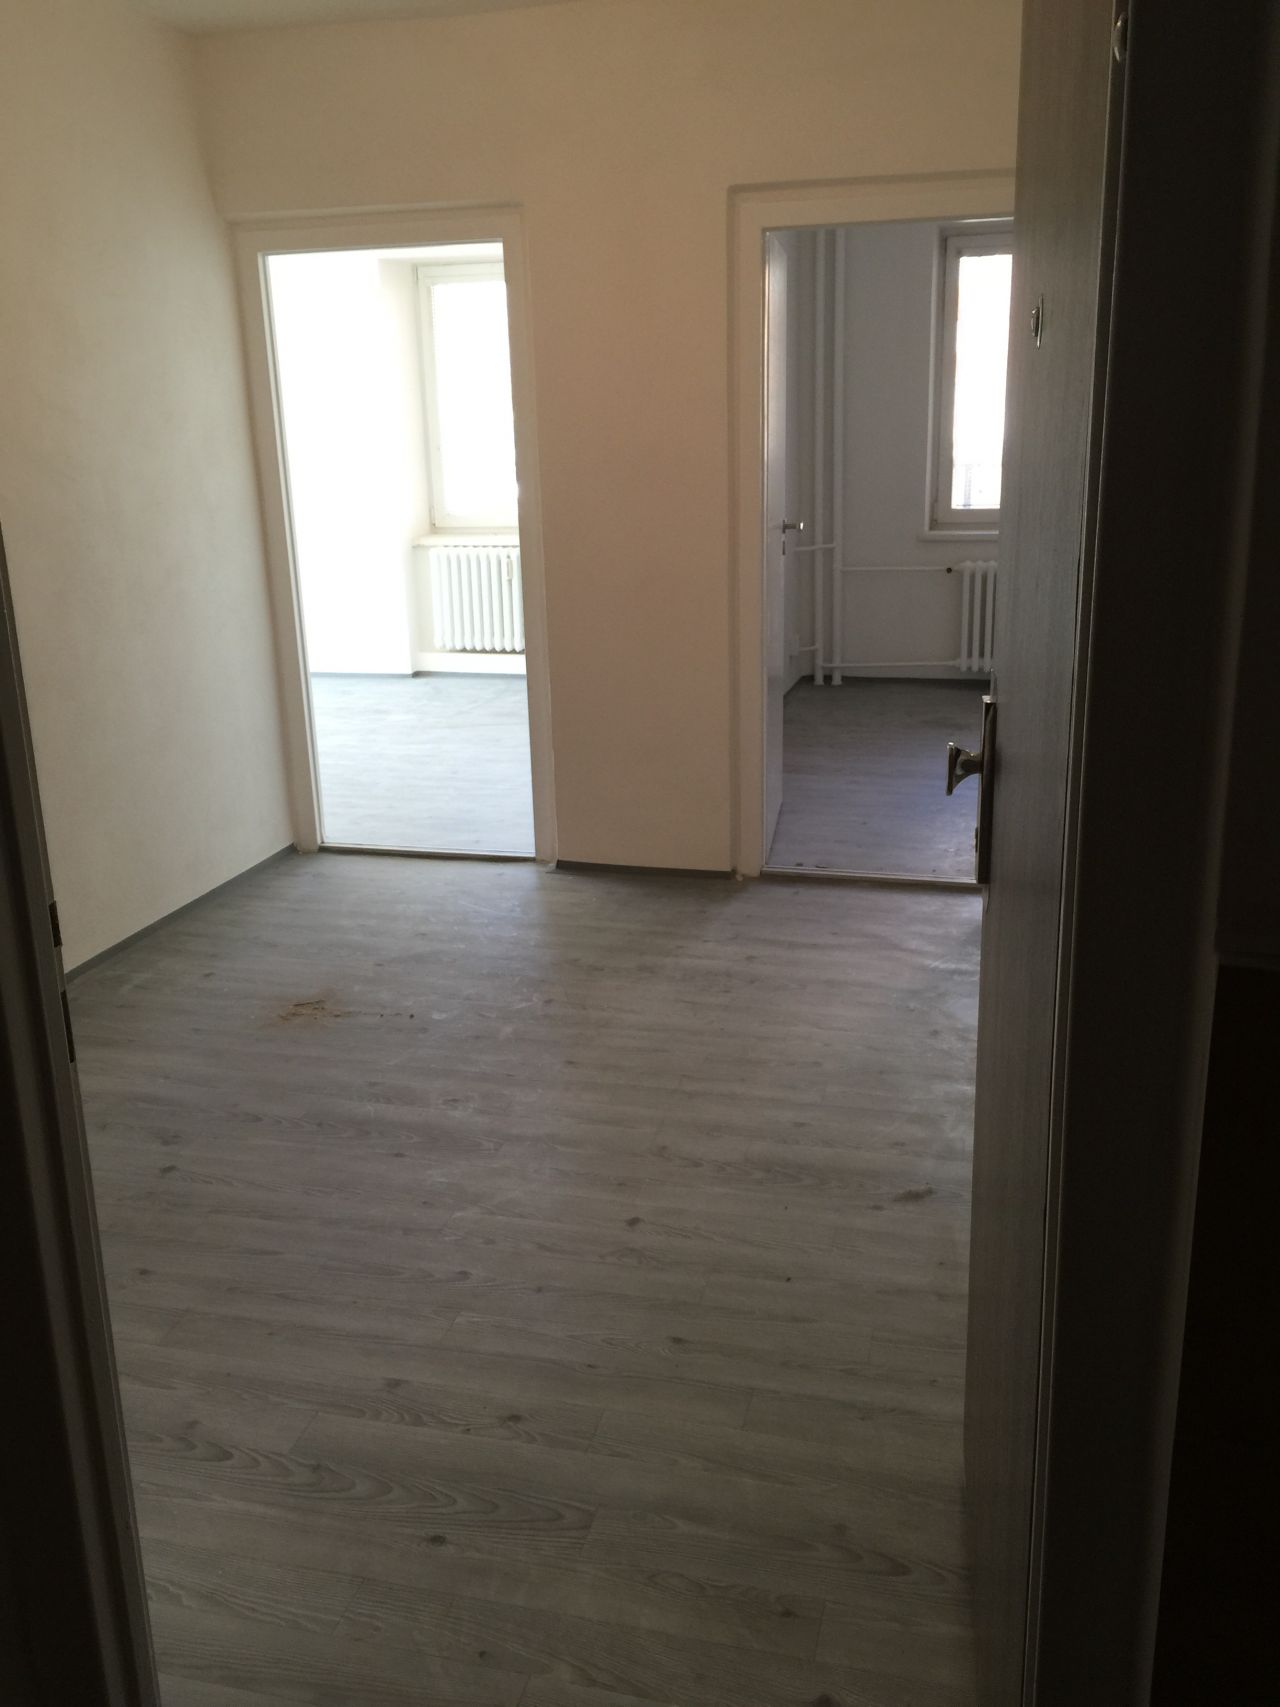 Pronájem bytu 1+1 47 m2, ul. Varenská 2974/38, Moravská Ostrava - Fifejdy 